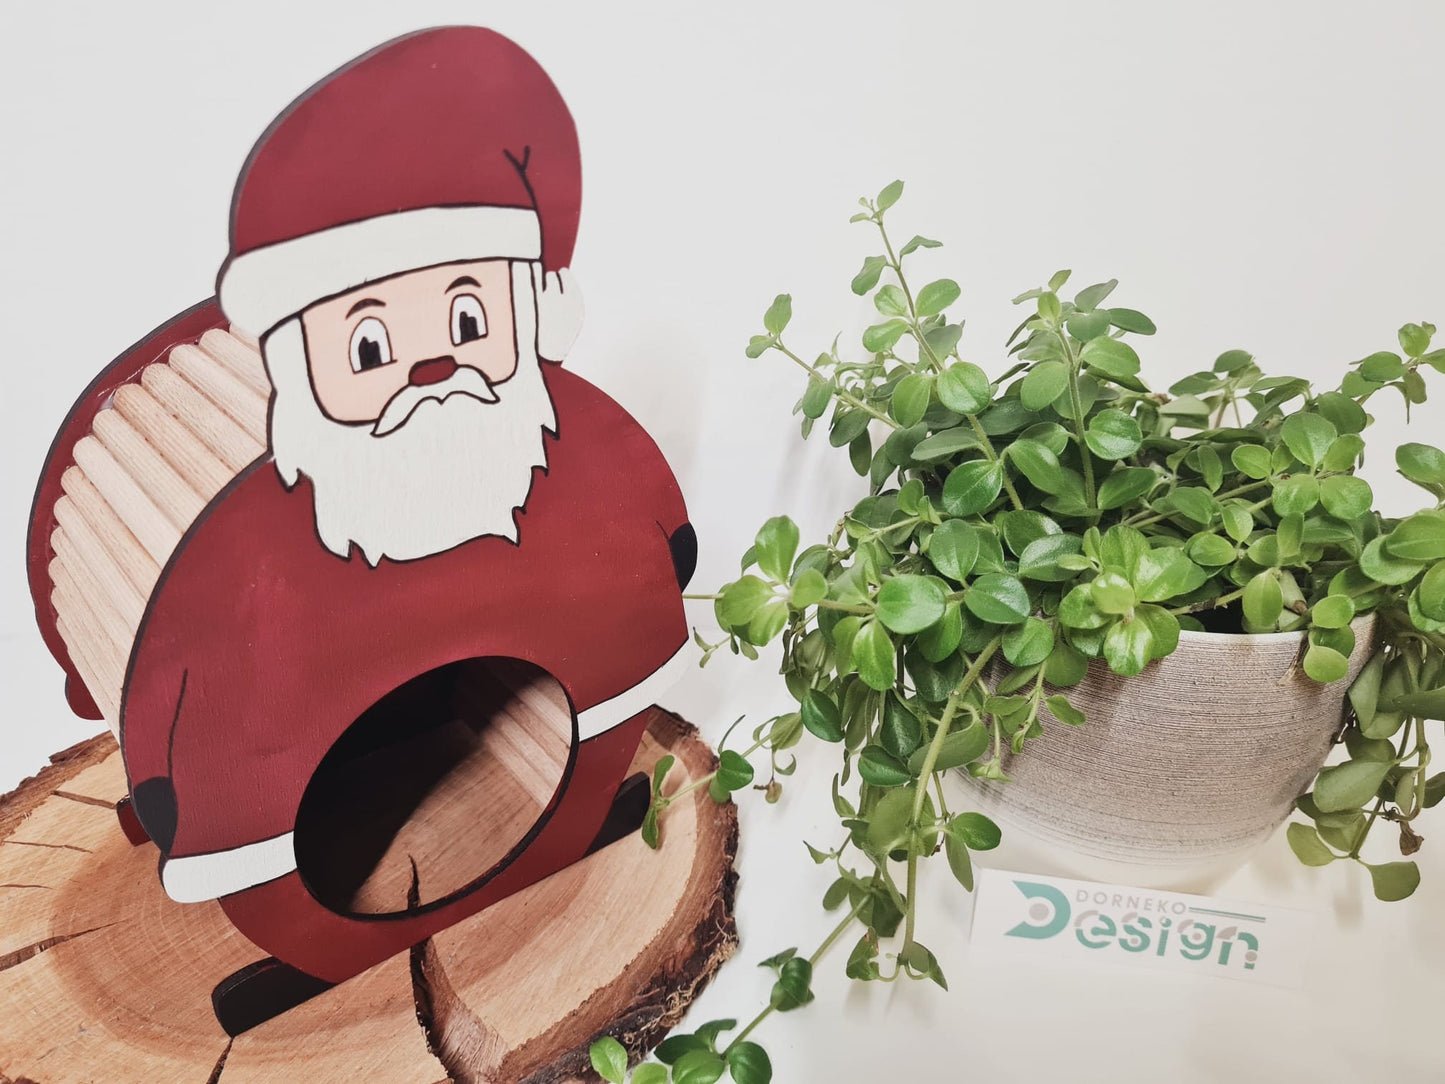 BAUSATZ Holzversteck  *Weihnachtsmann* für Kleinnager